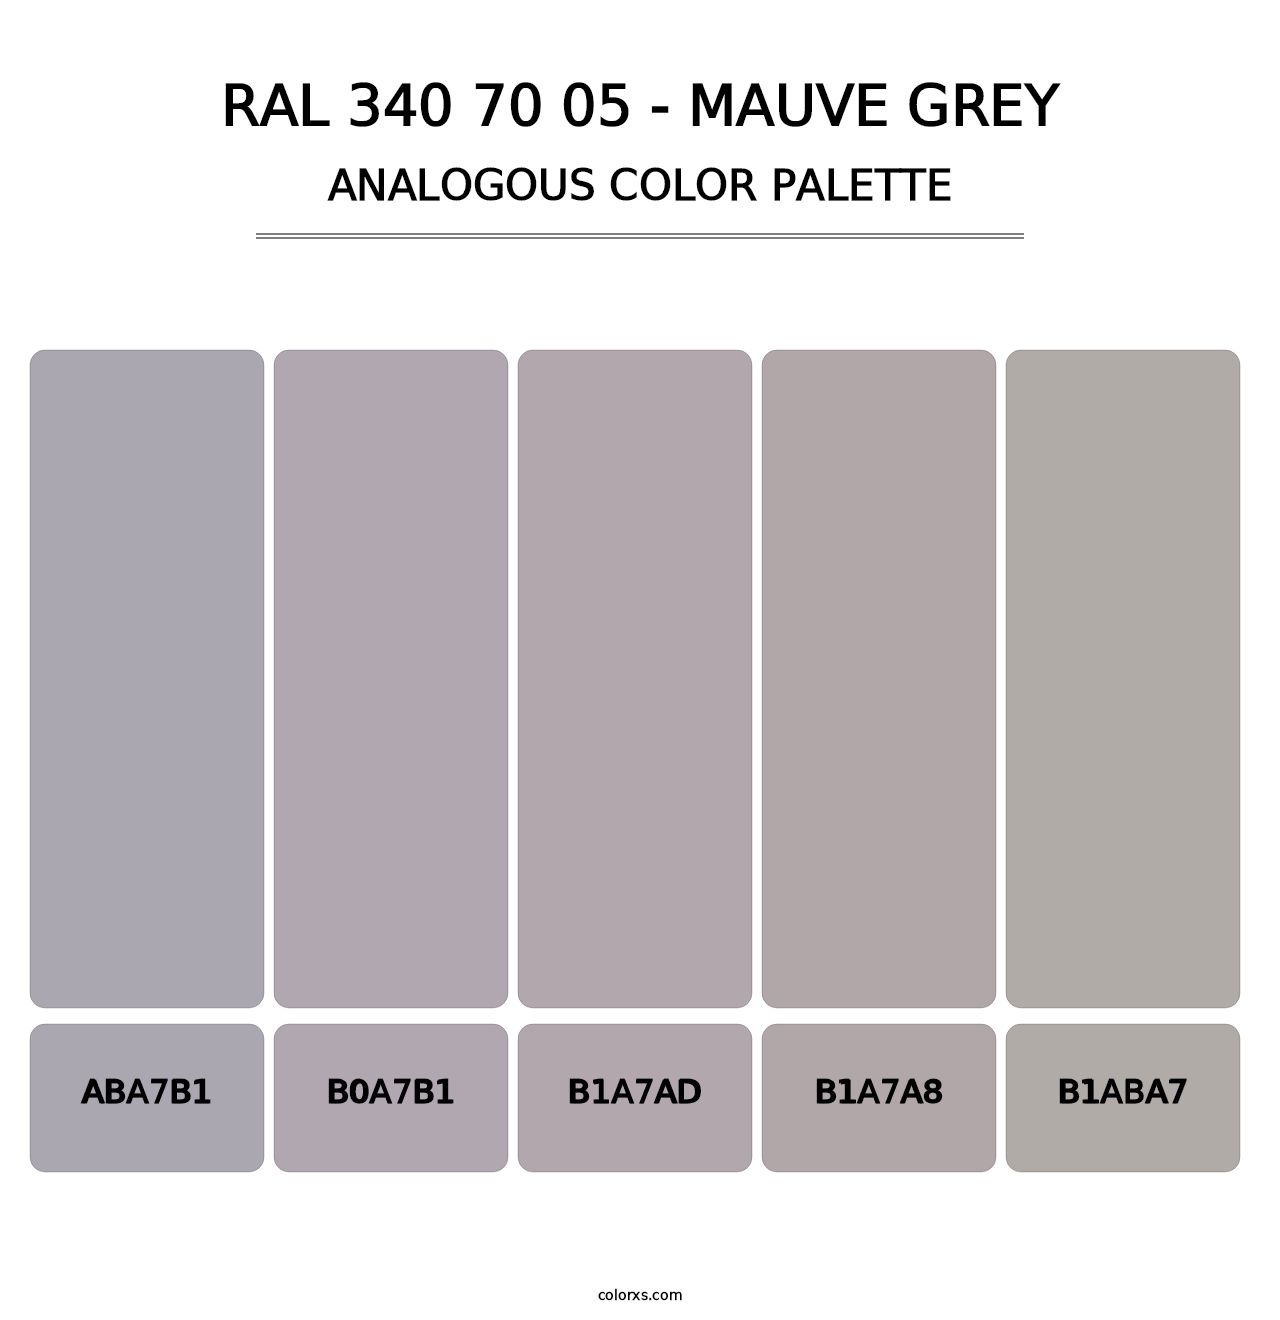 RAL 340 70 05 - Mauve Grey - Analogous Color Palette